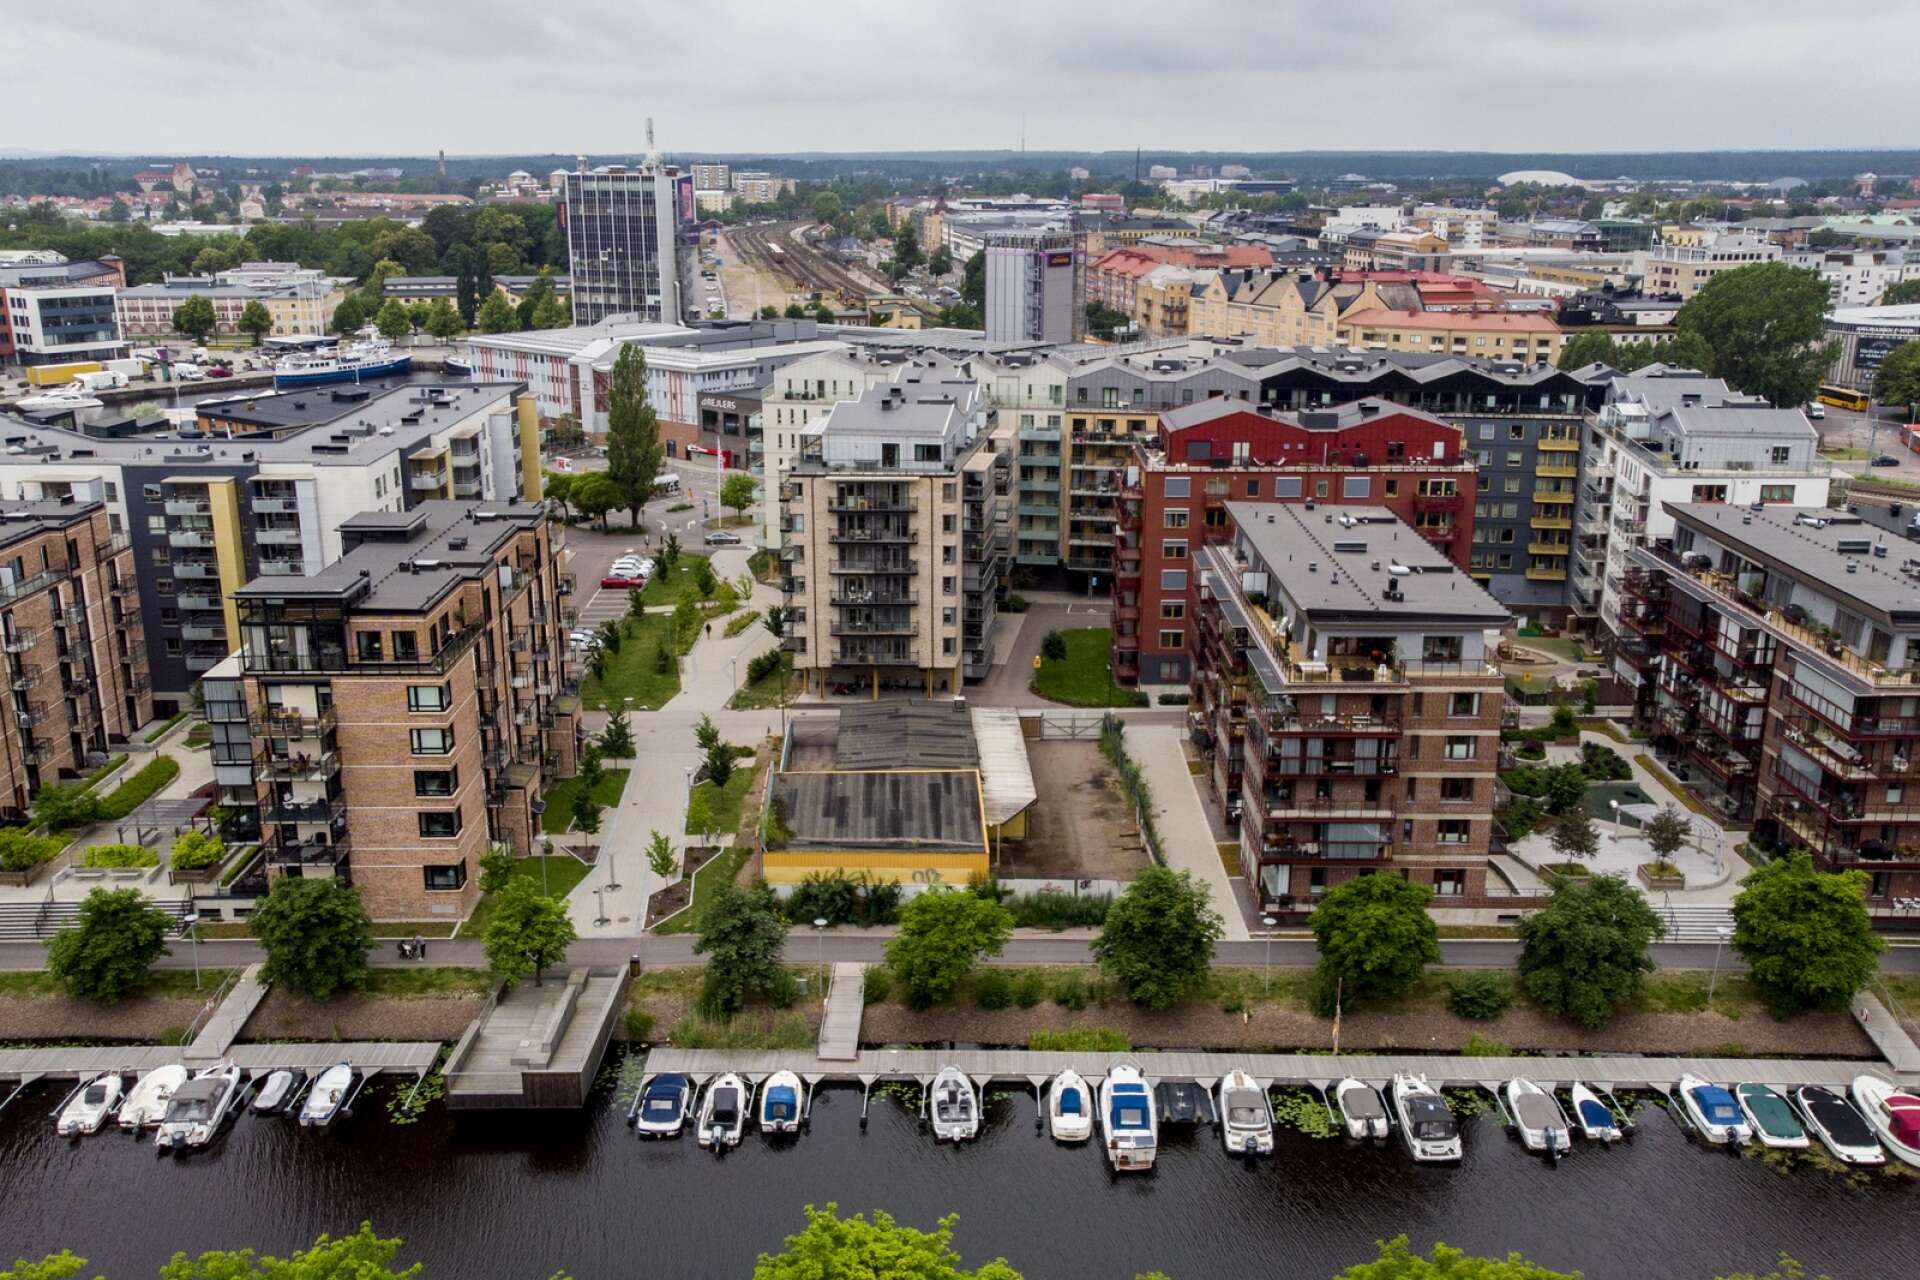 Inre hamn i Karlstad, där två av länets dyraste gator finns.